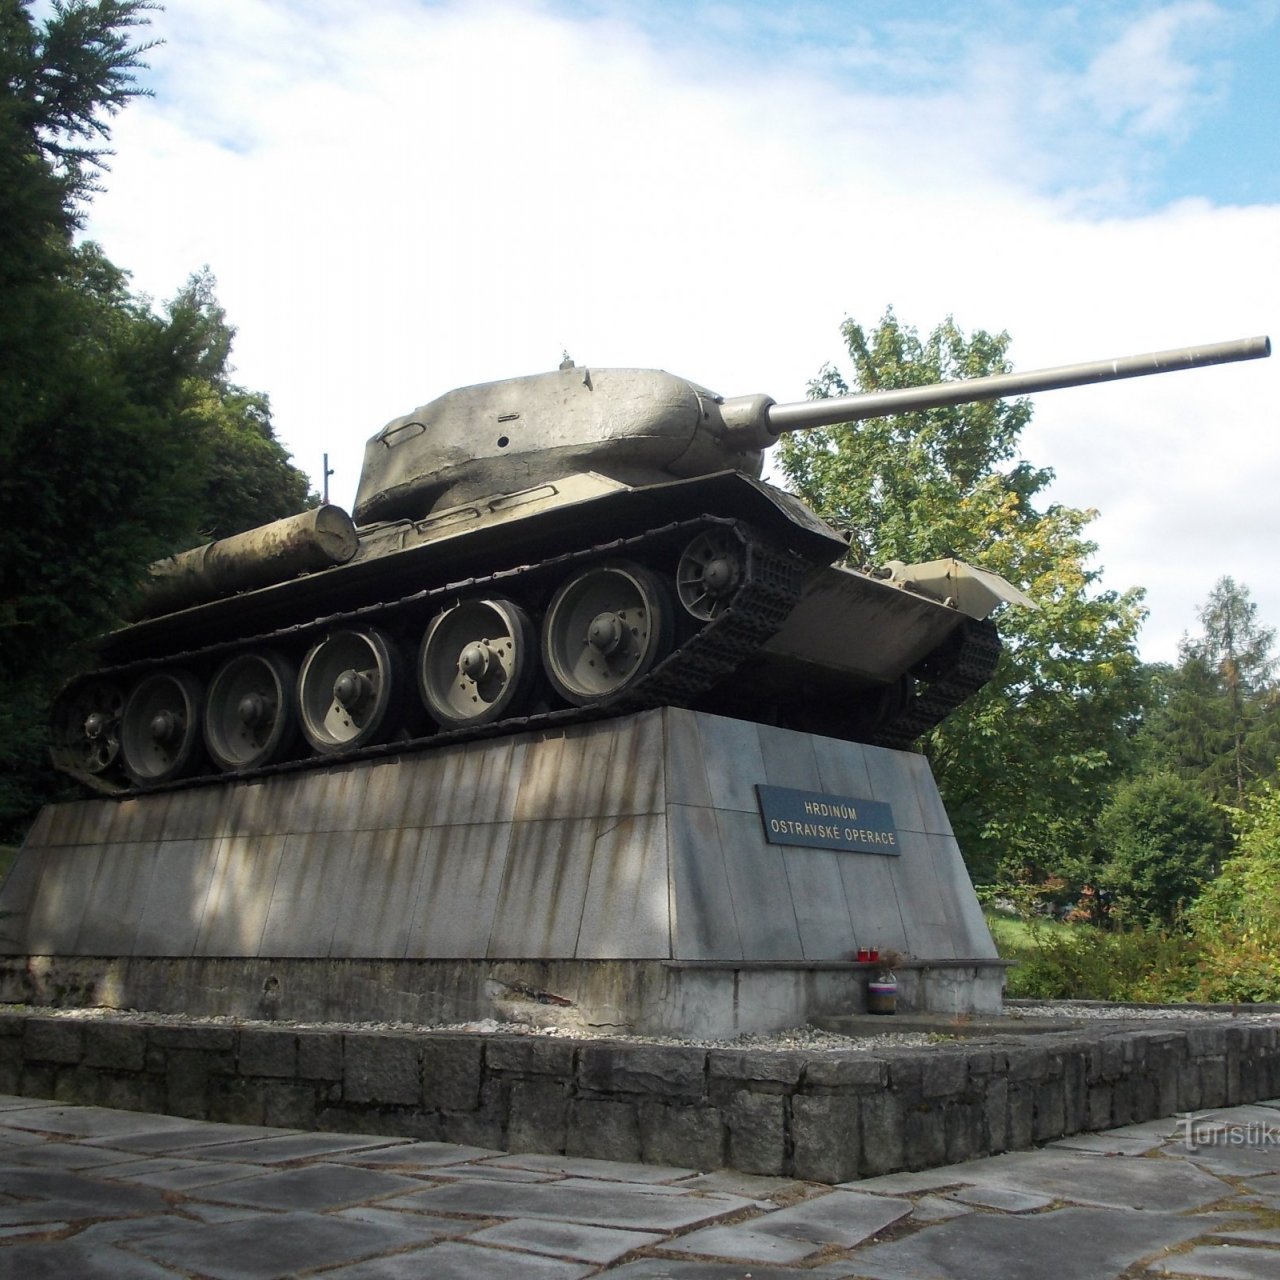 Háj ve Slezsku, časť Smolkov - pamätník - tank T -34